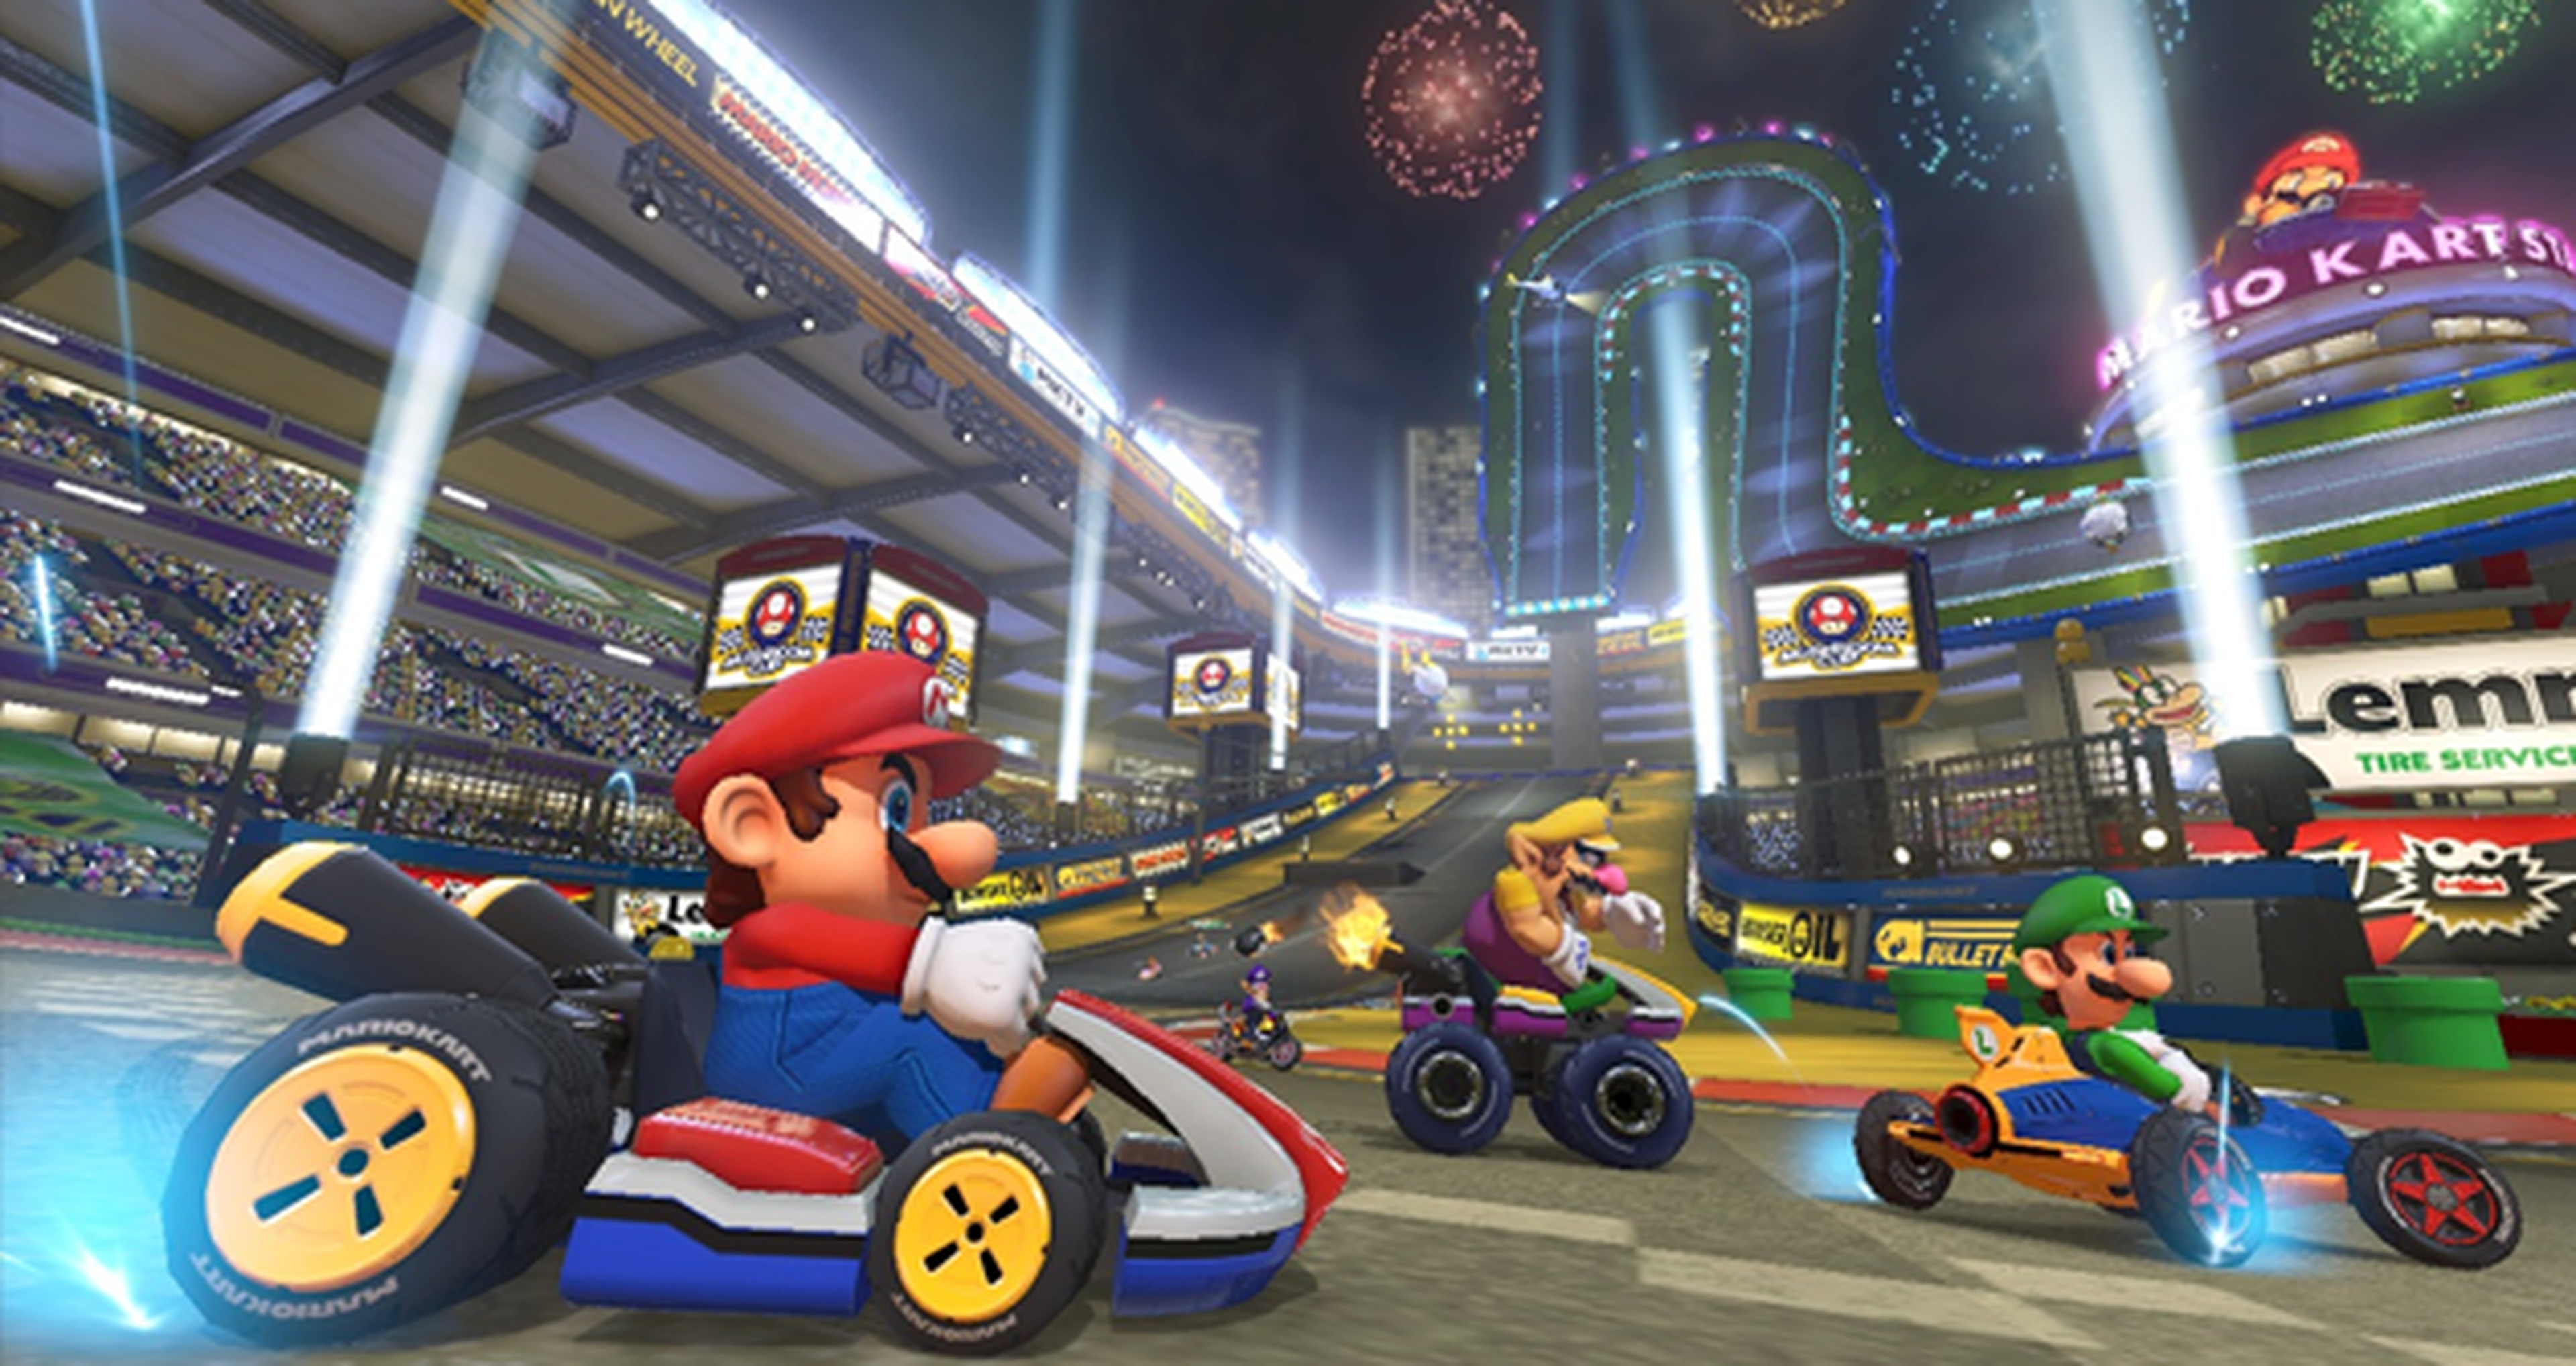 Mario Kart 8, tachado de discriminatorio por su falta de diversidad racial